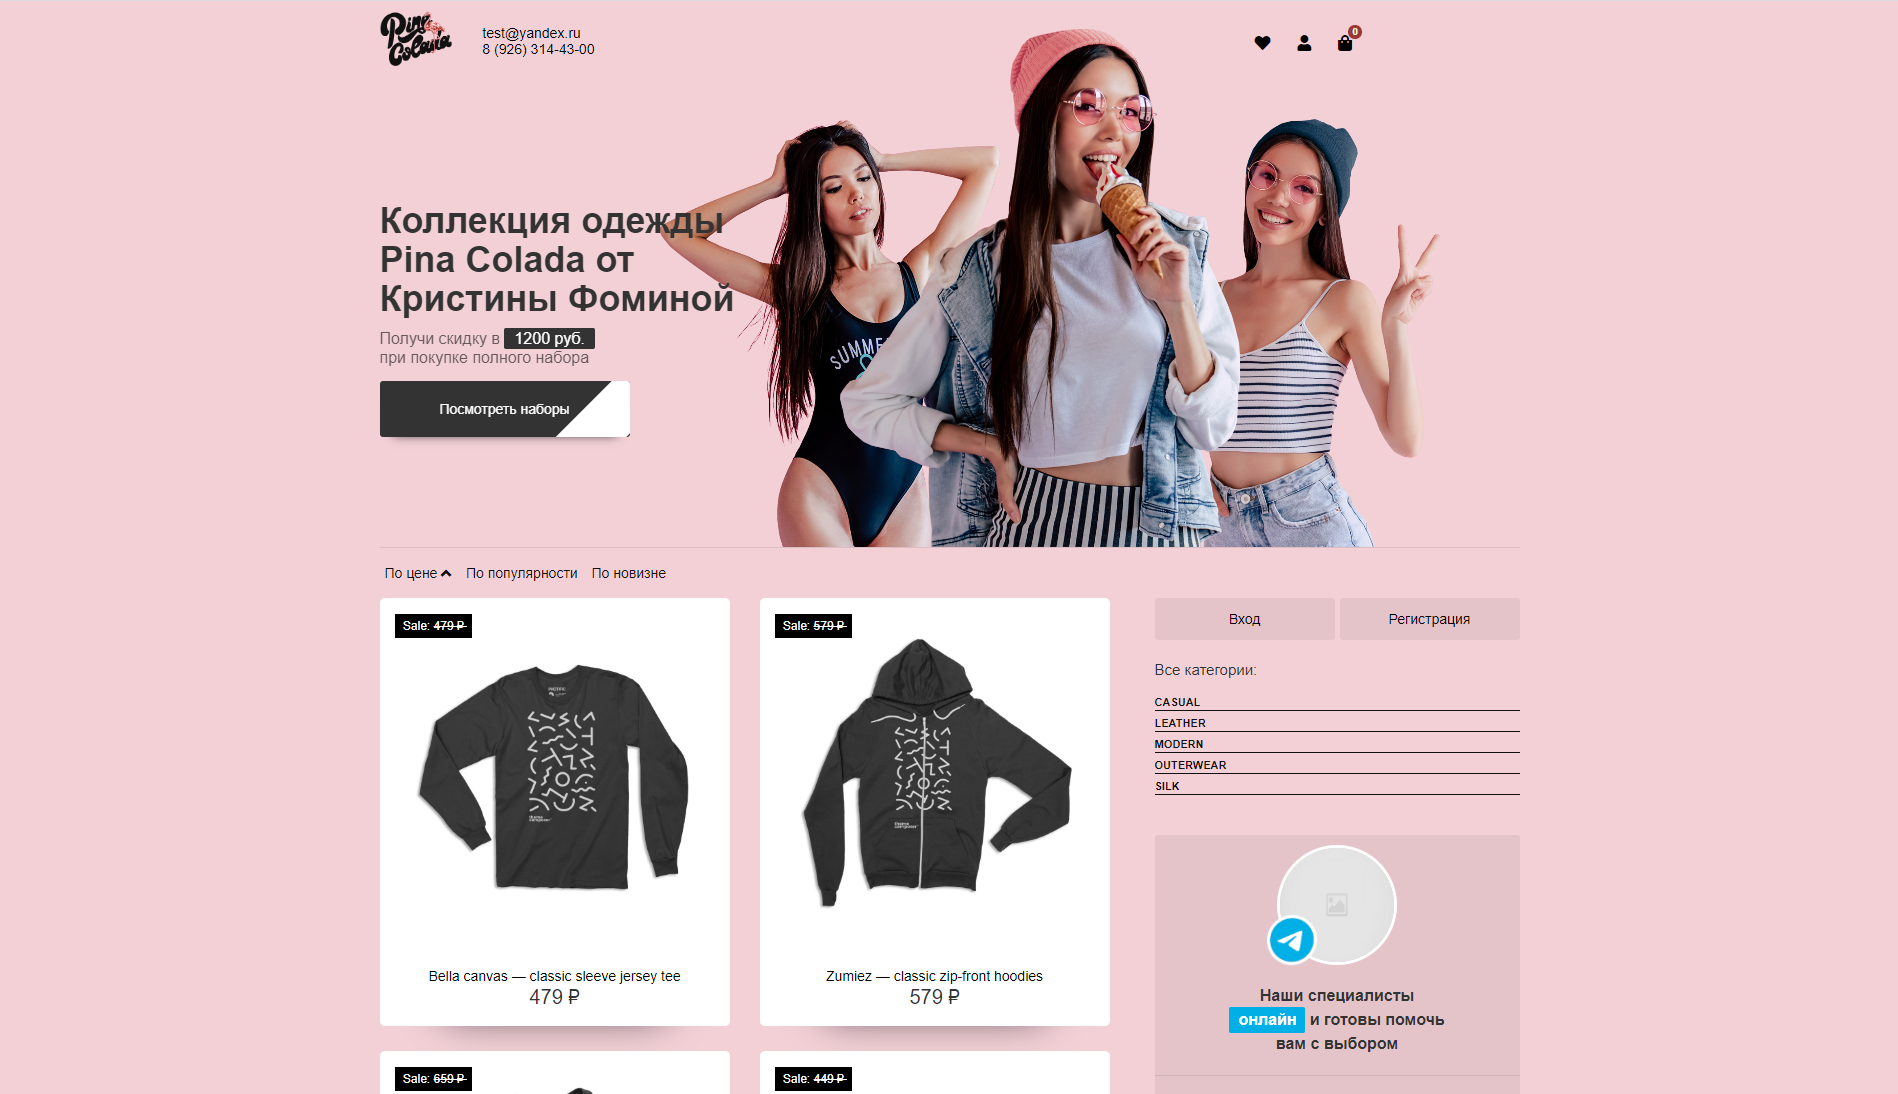 Интернет-магазин одежды Pina Colada (Пример)